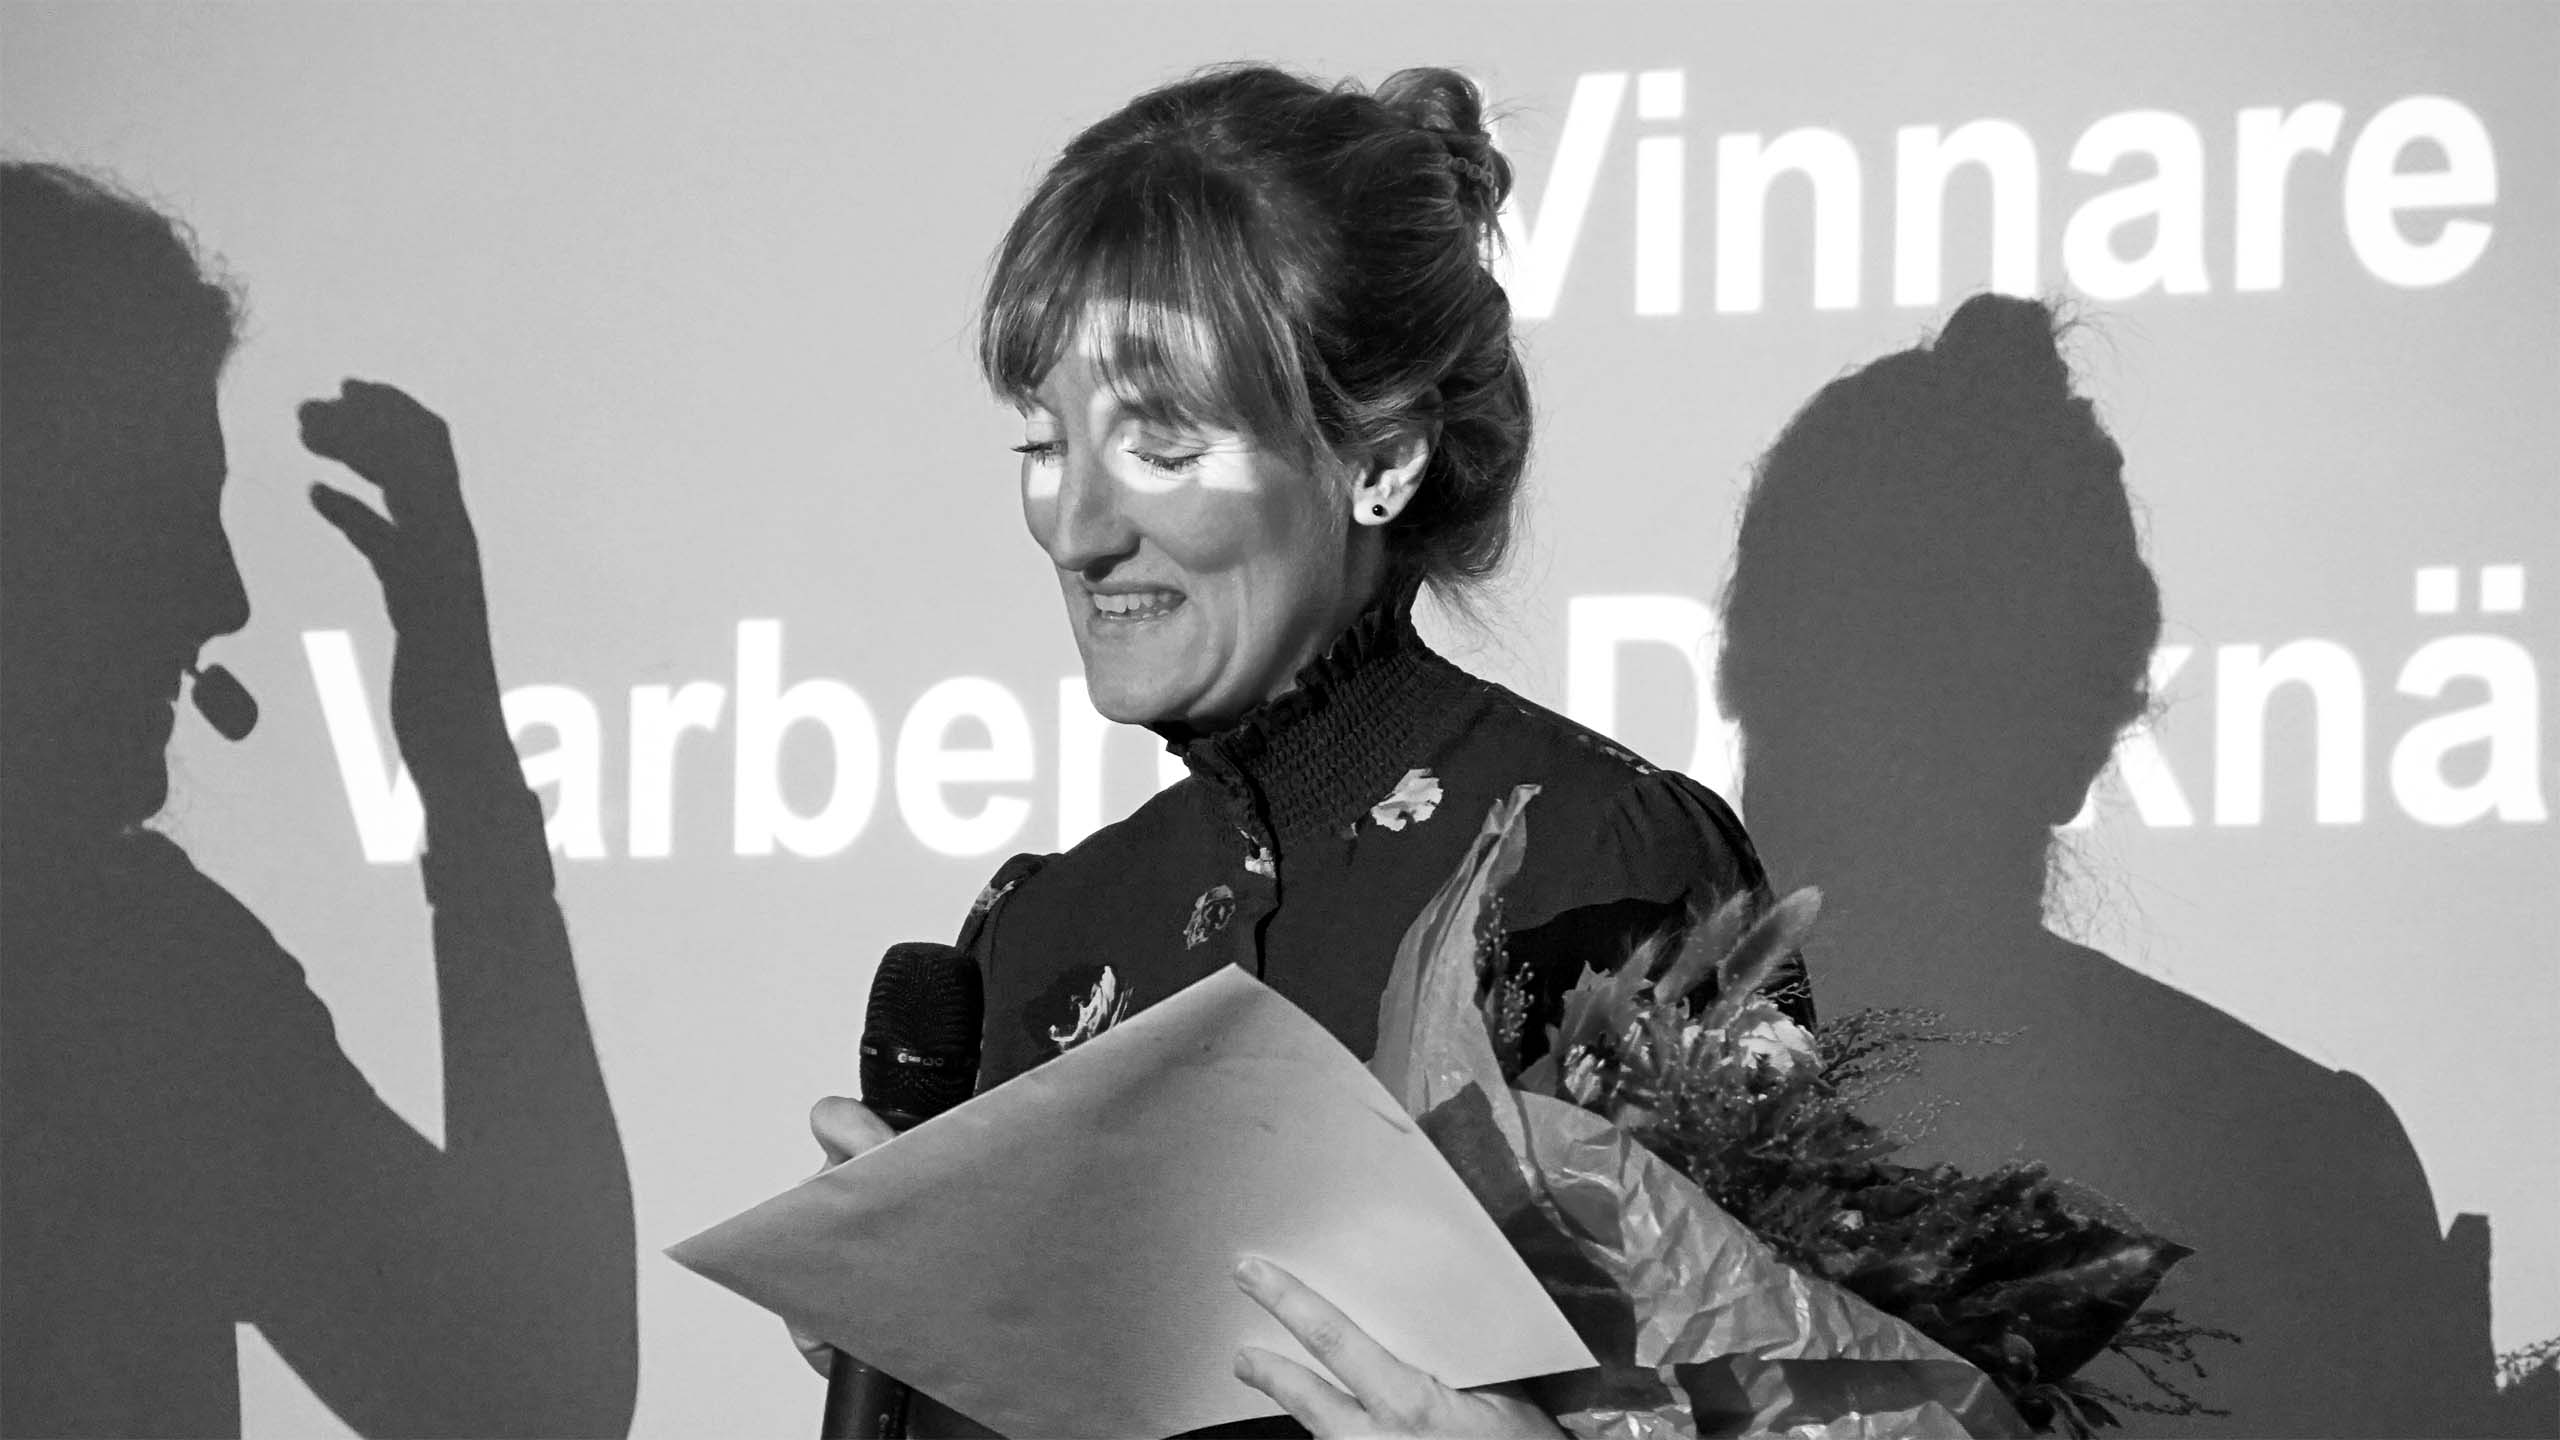 Vinnaren av Varbergs Draknäste 2019 tar emot pris och blommor.